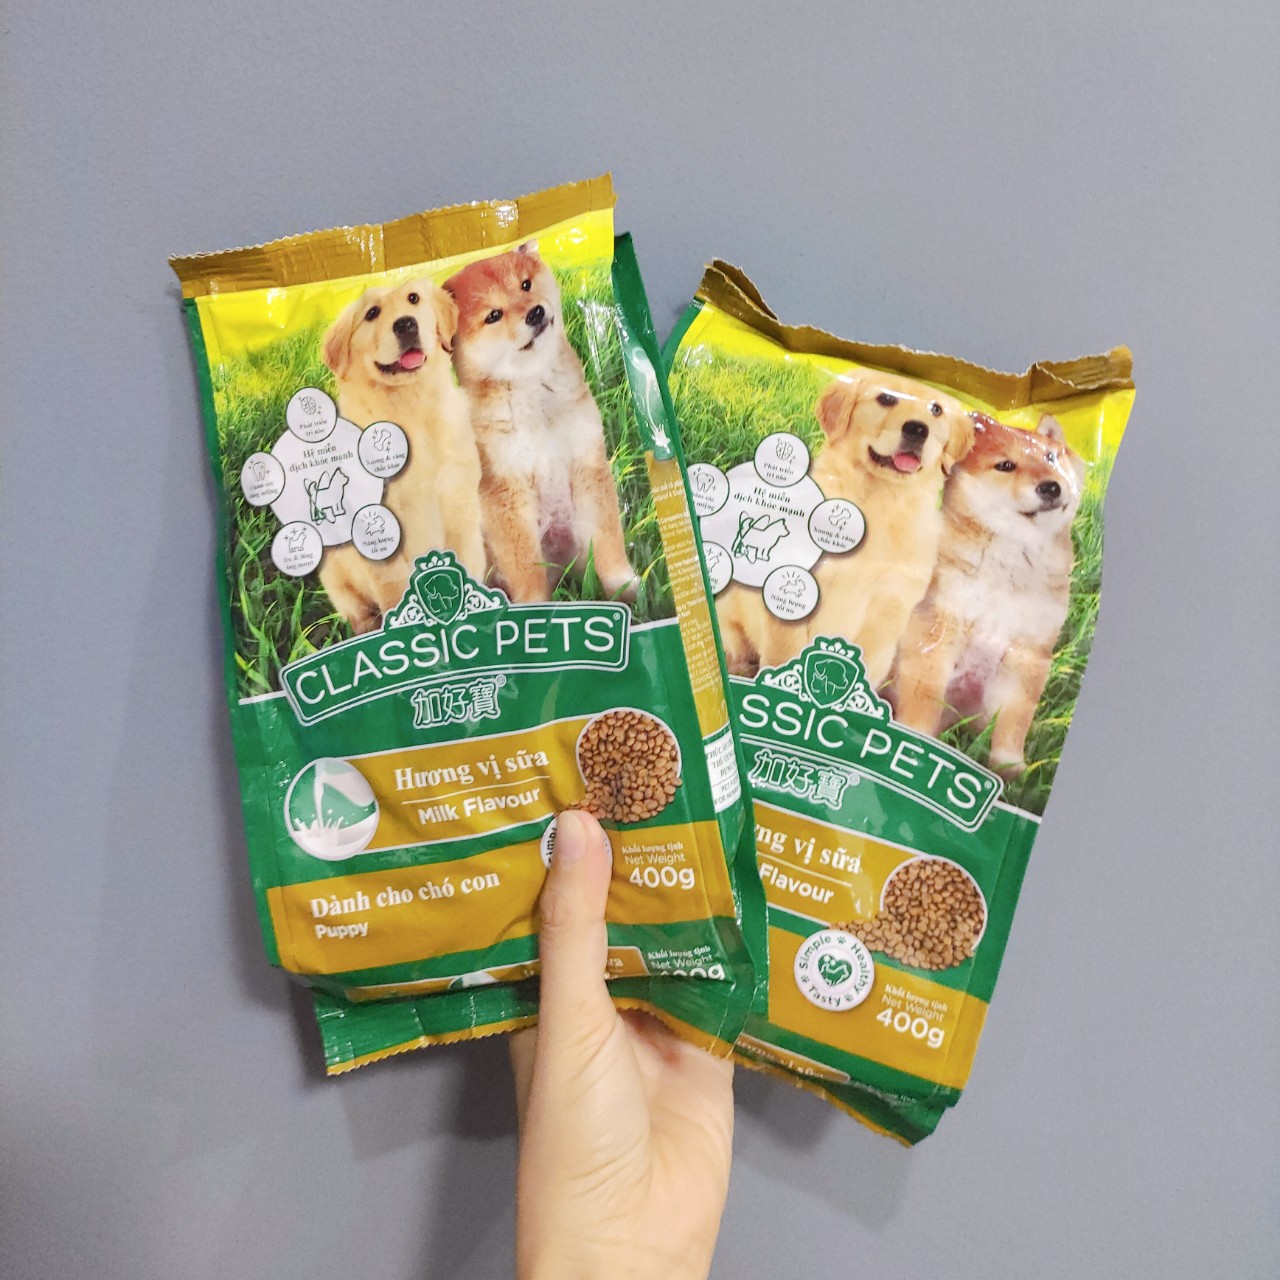 COMBO 5 GÓI Thức Ăn Hạt Khô Dành Chó Con Hương Vị Sữa Classic Pets Milk Flavour 400g